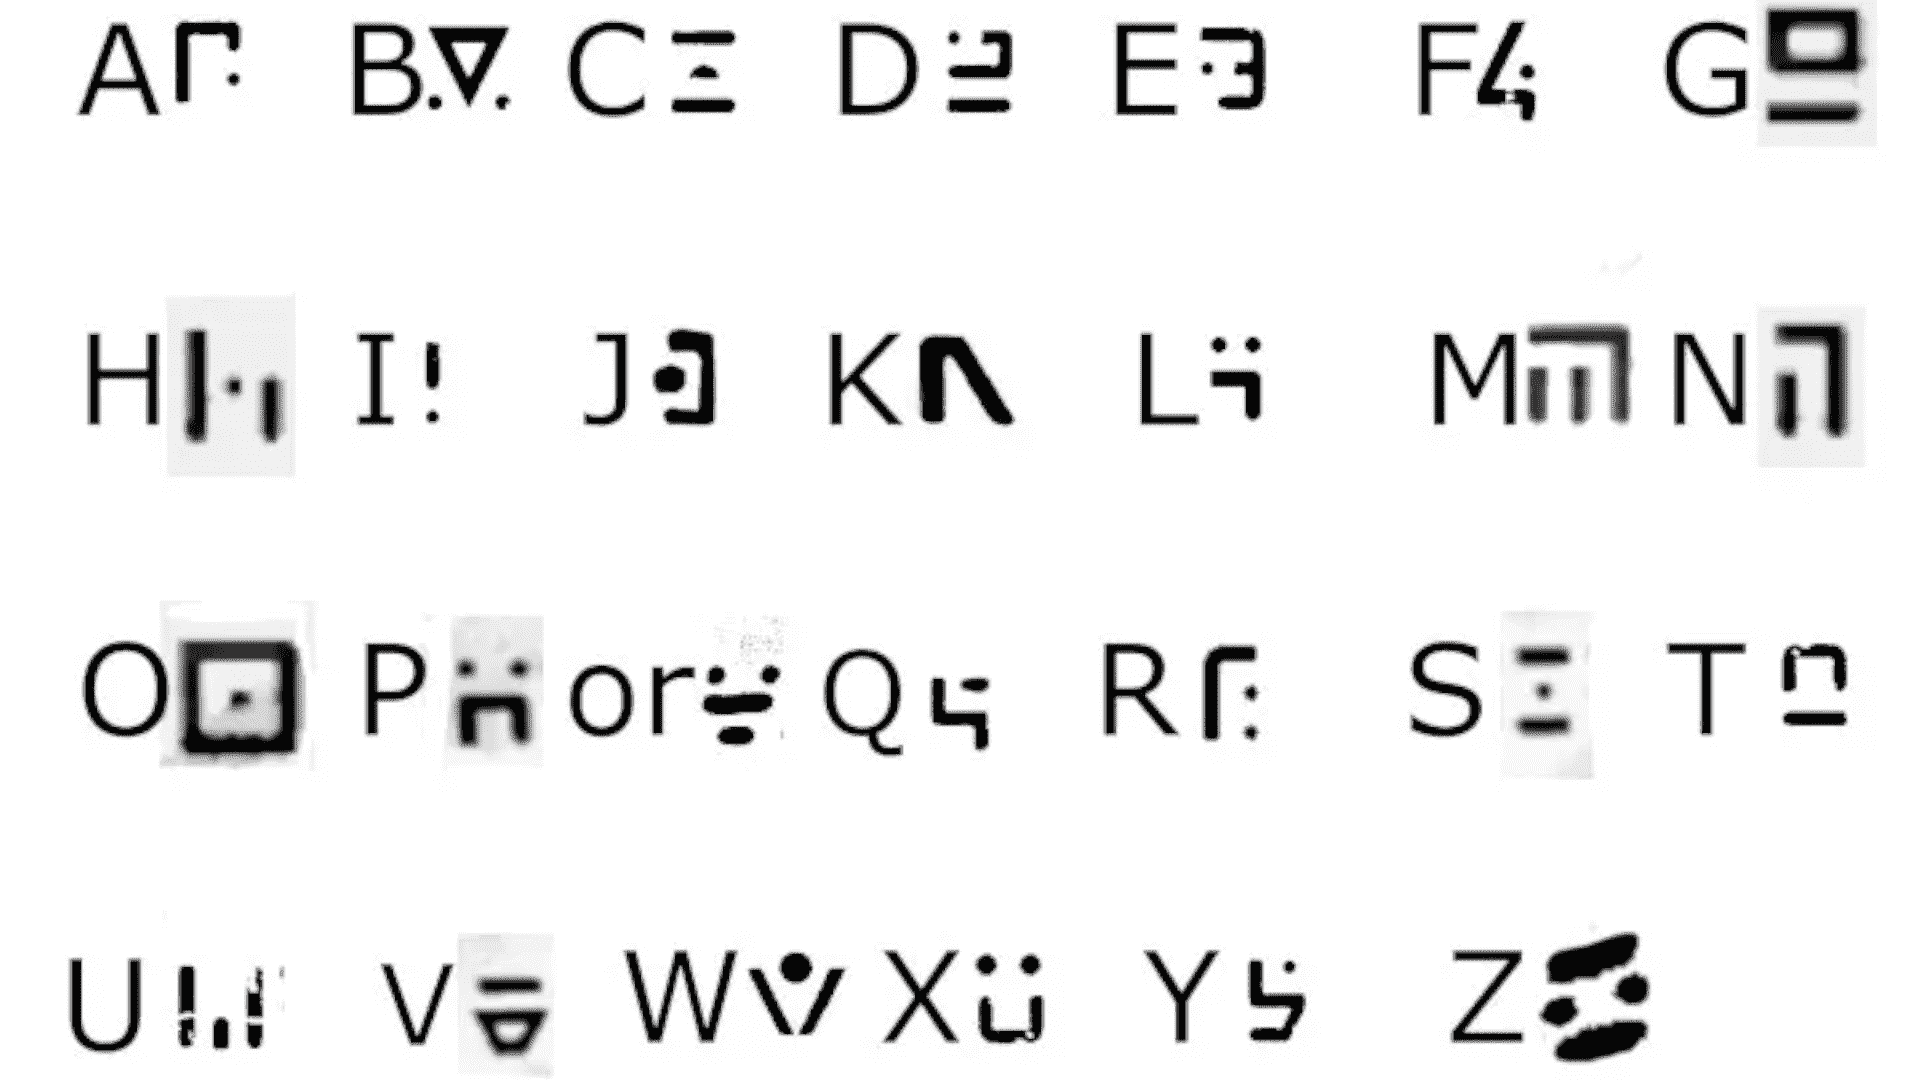 İngiliz alfabesiyle düzenlenmiş Stray'de kullanılan şifre